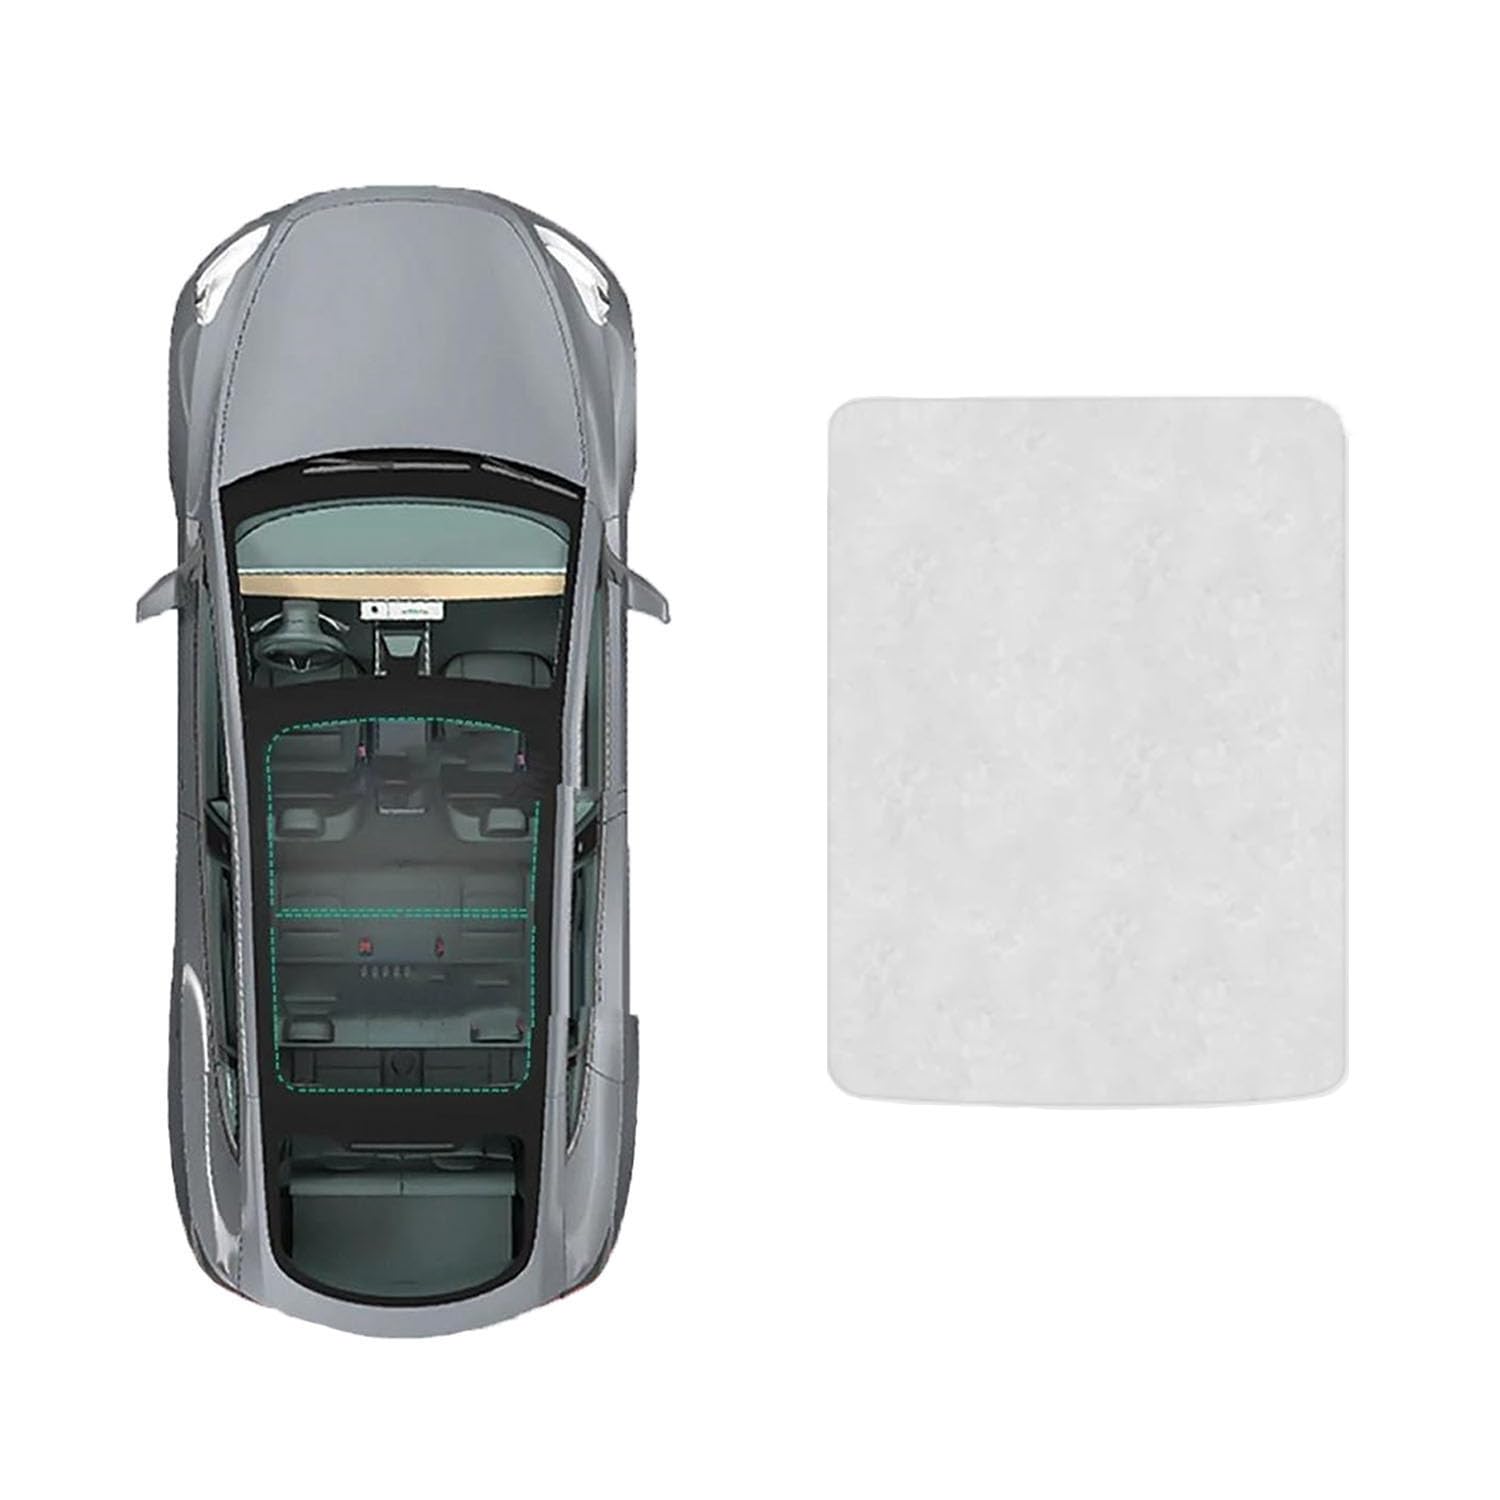 Für Audi A3 2014- Autofenster Sonnenschutz Dachsonnenschutz Auto Schiebedach Sonnenschirm Dachfenster Rollo Beschattung Zubehör,B-Gray White Suede von JiAYuF